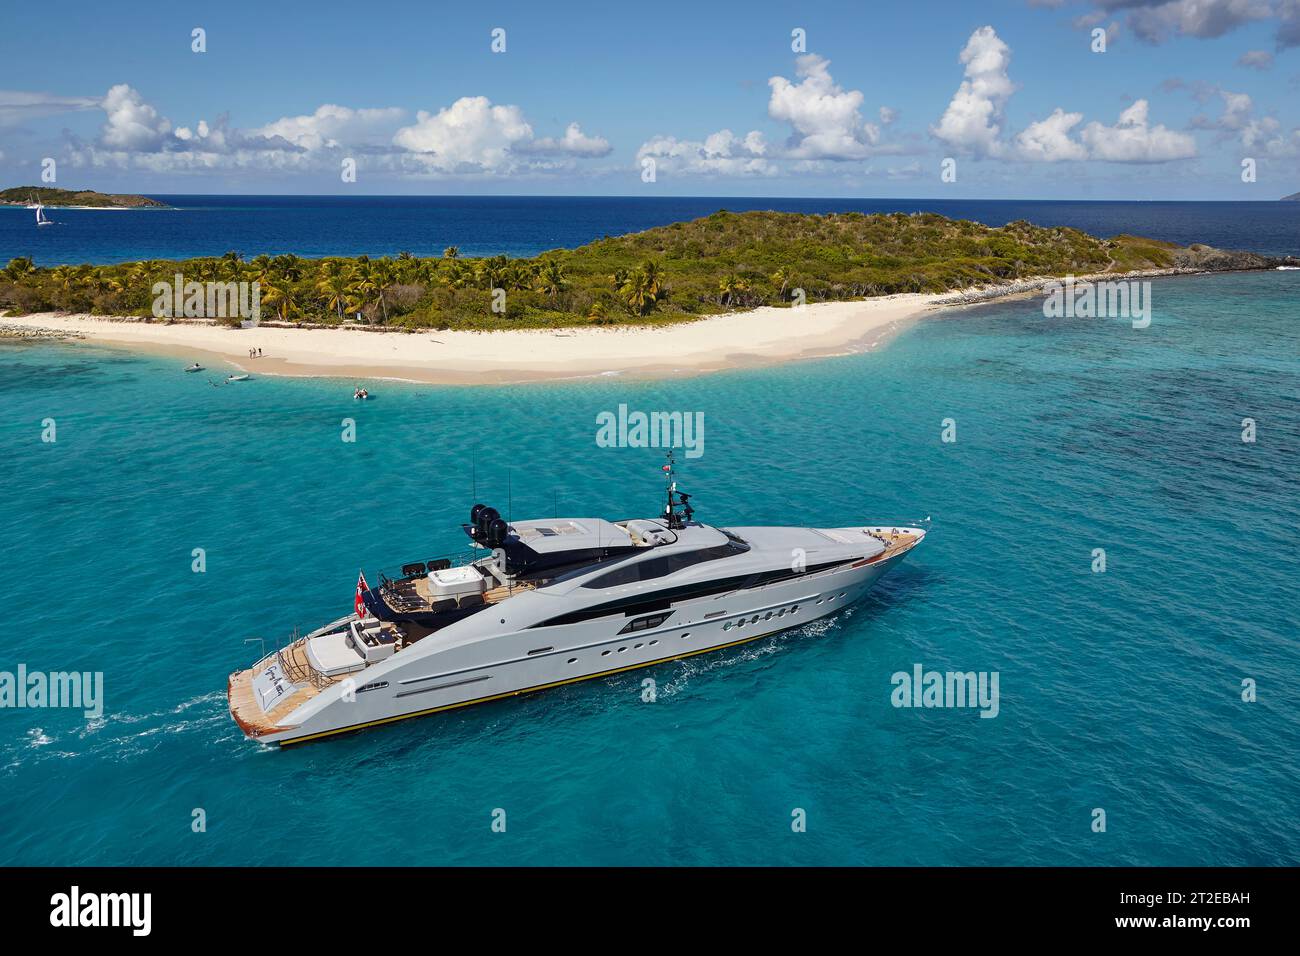 Palmer Johnson, yacht charter da 45 metri al largo di Green Cay, Little Jost Van Dyke, Tortola, nelle Isole Vergini britanniche. Foto Stock